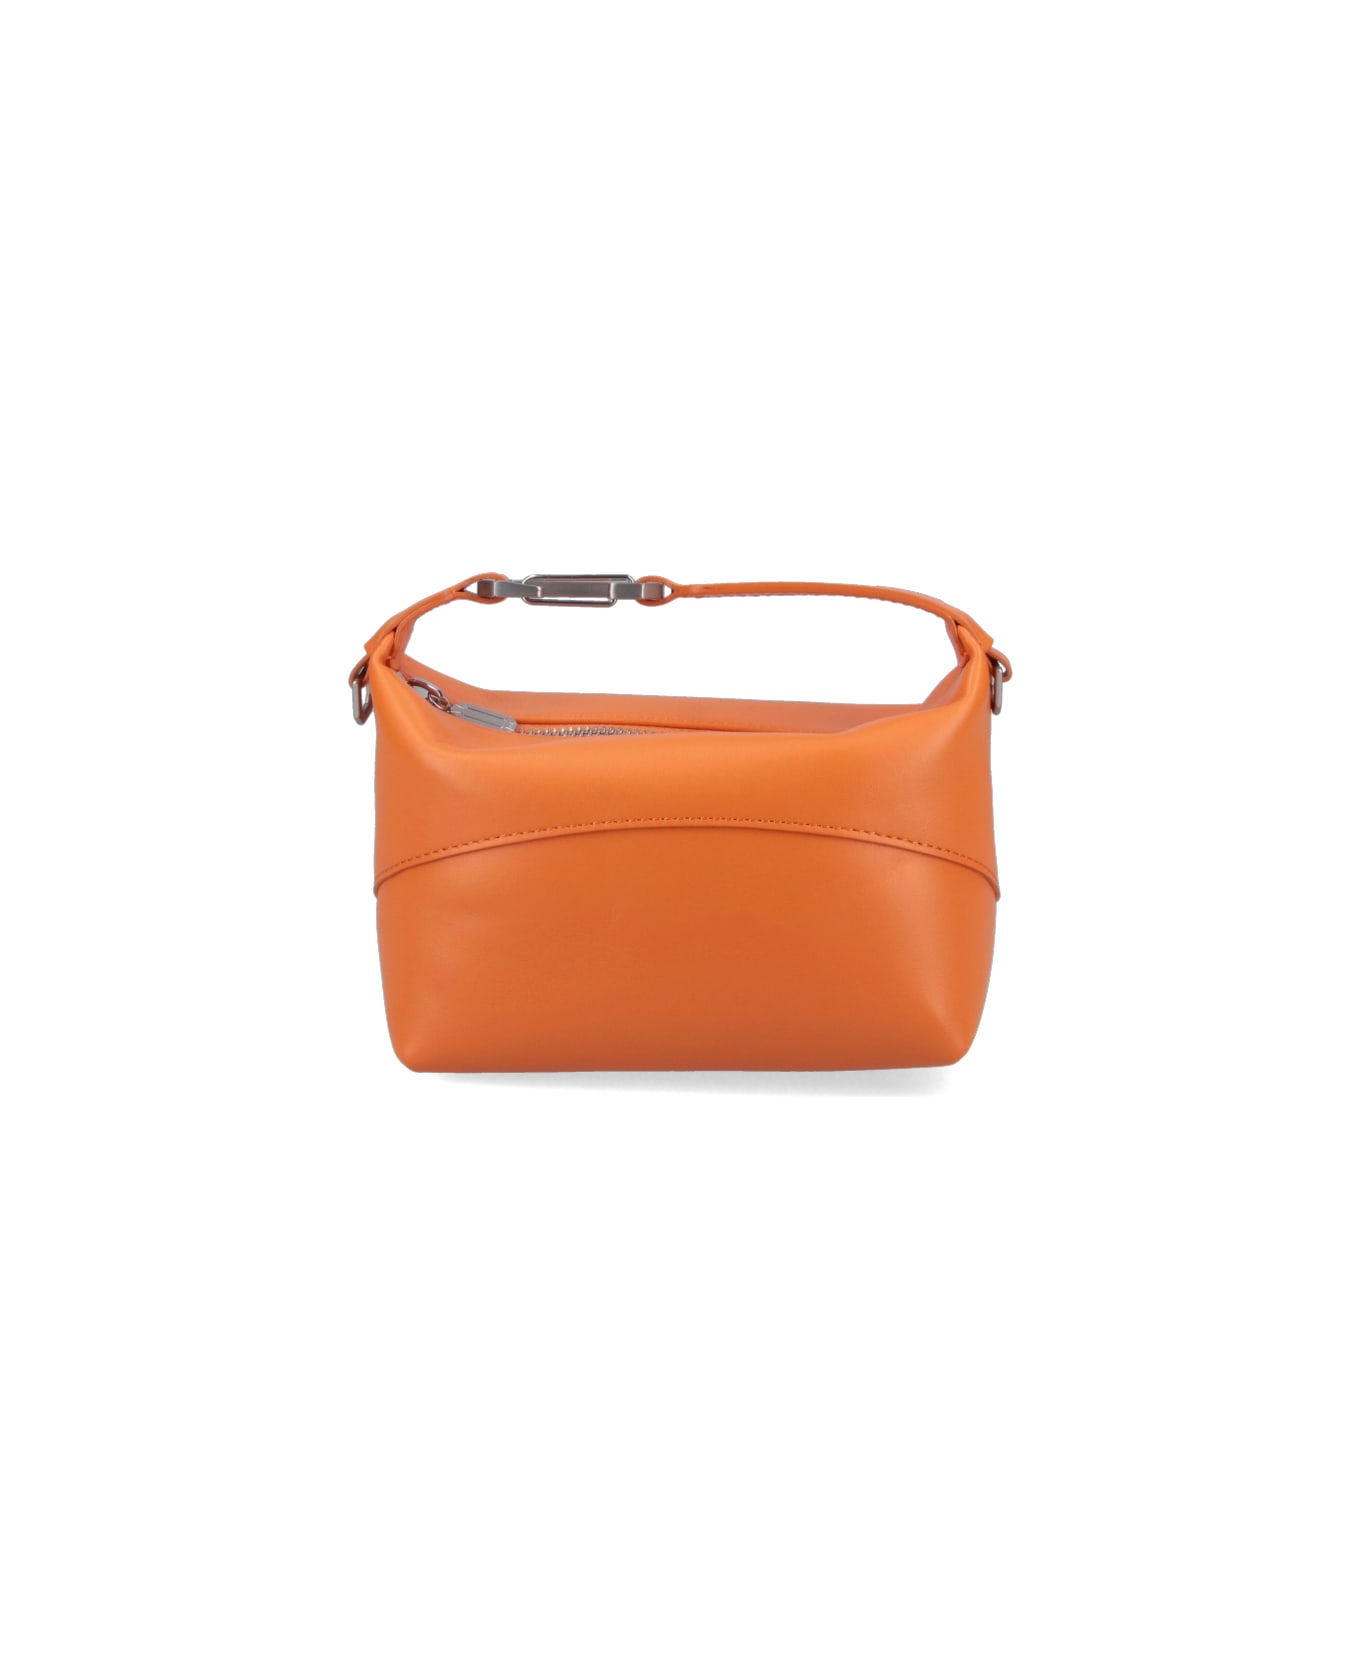 EÉRA "moon" Handbag - Orange